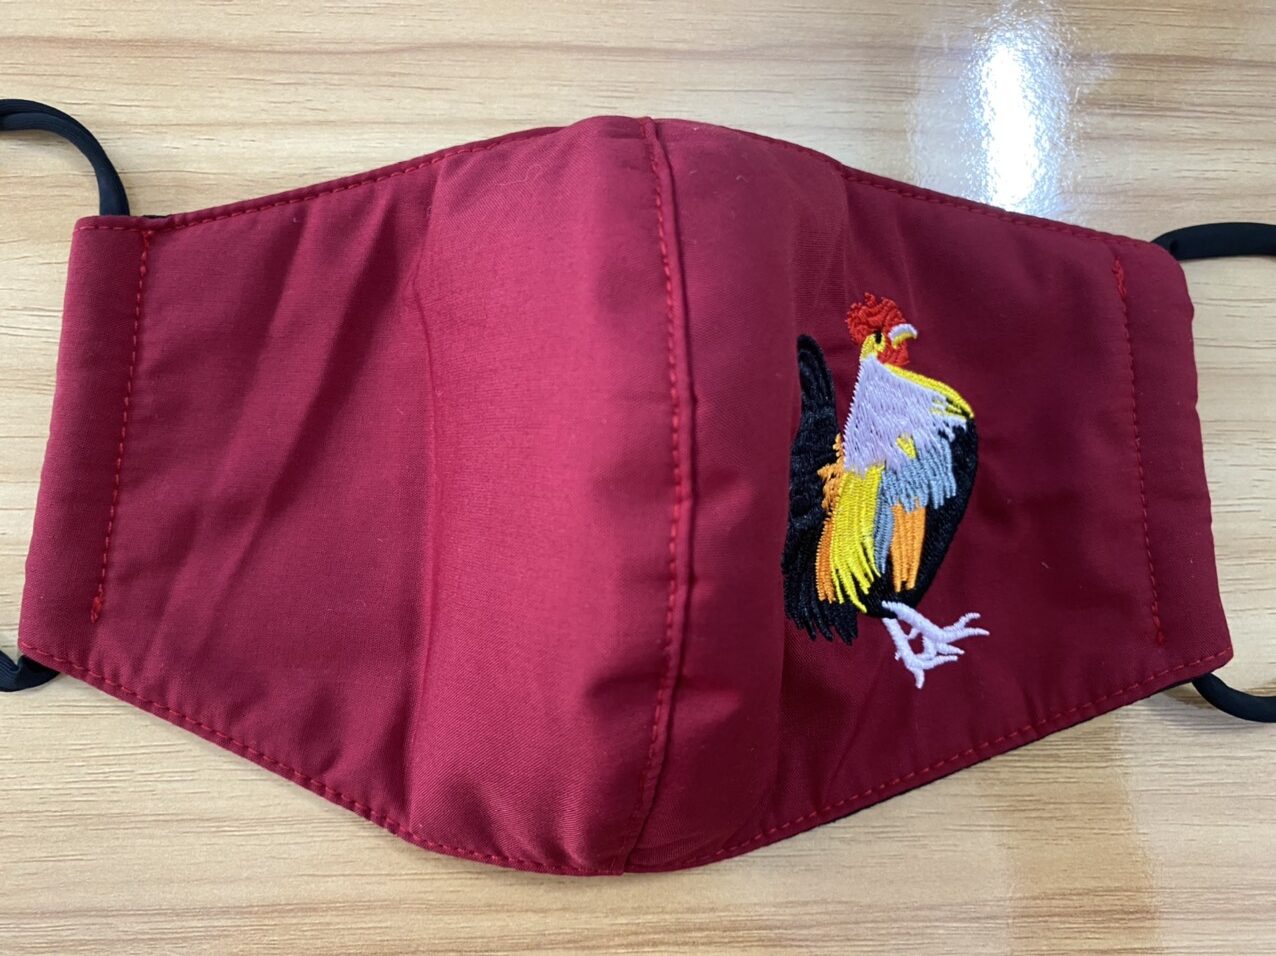 Mẫu khẩu trang được may 3 lớp vải và thêu hình con gà trống Việt Nam.